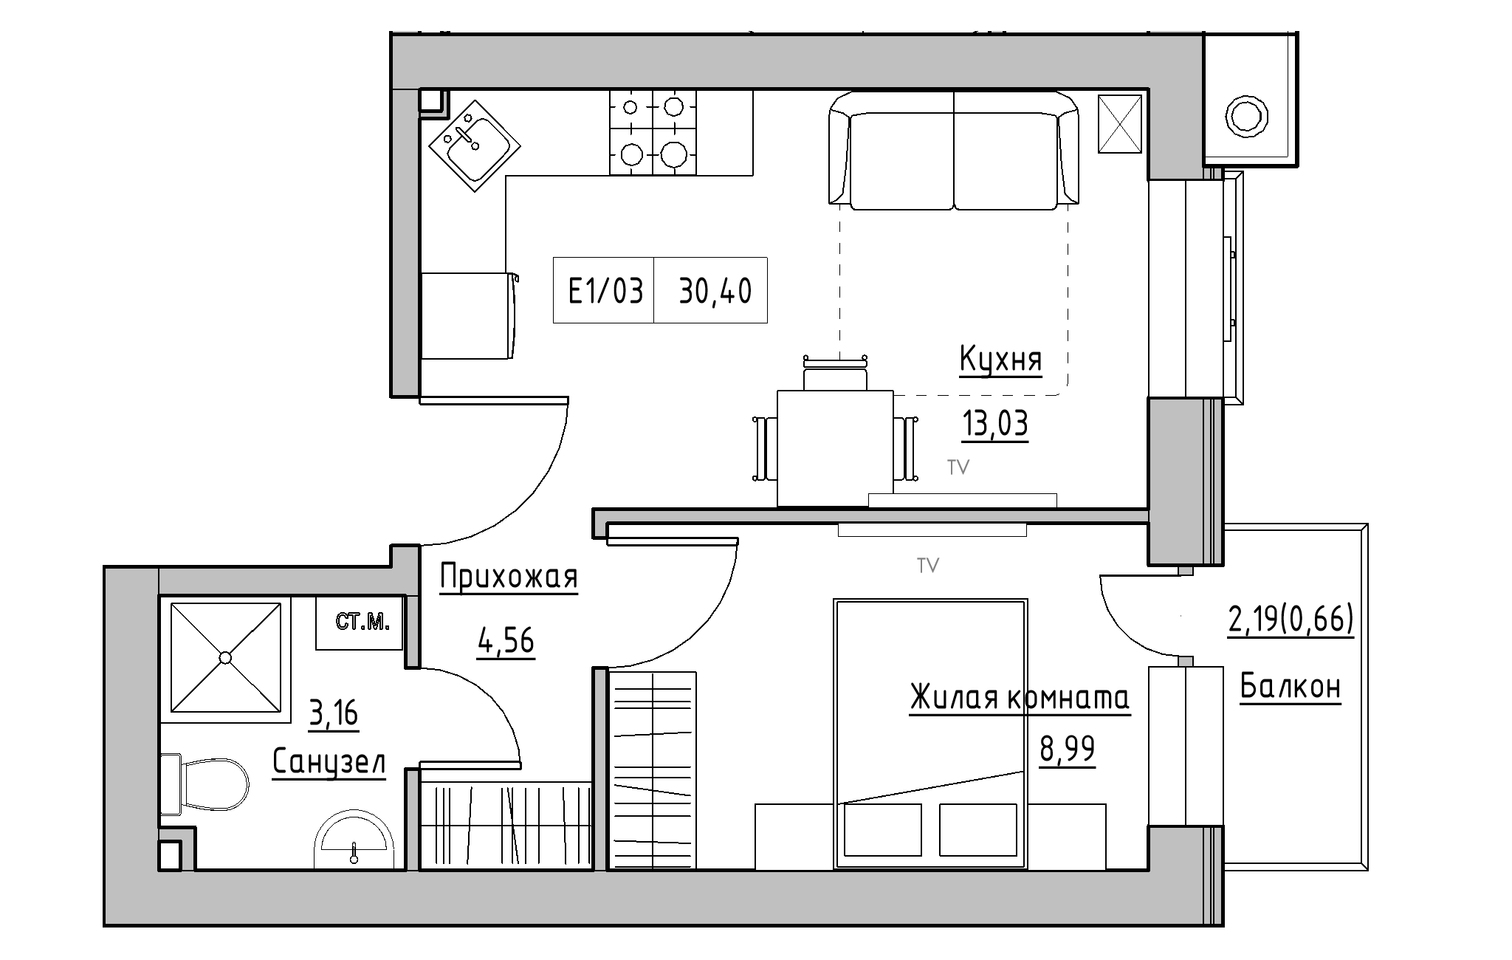 Планировка 1-к квартира площей 30.4м2, KS-013-04/0002.